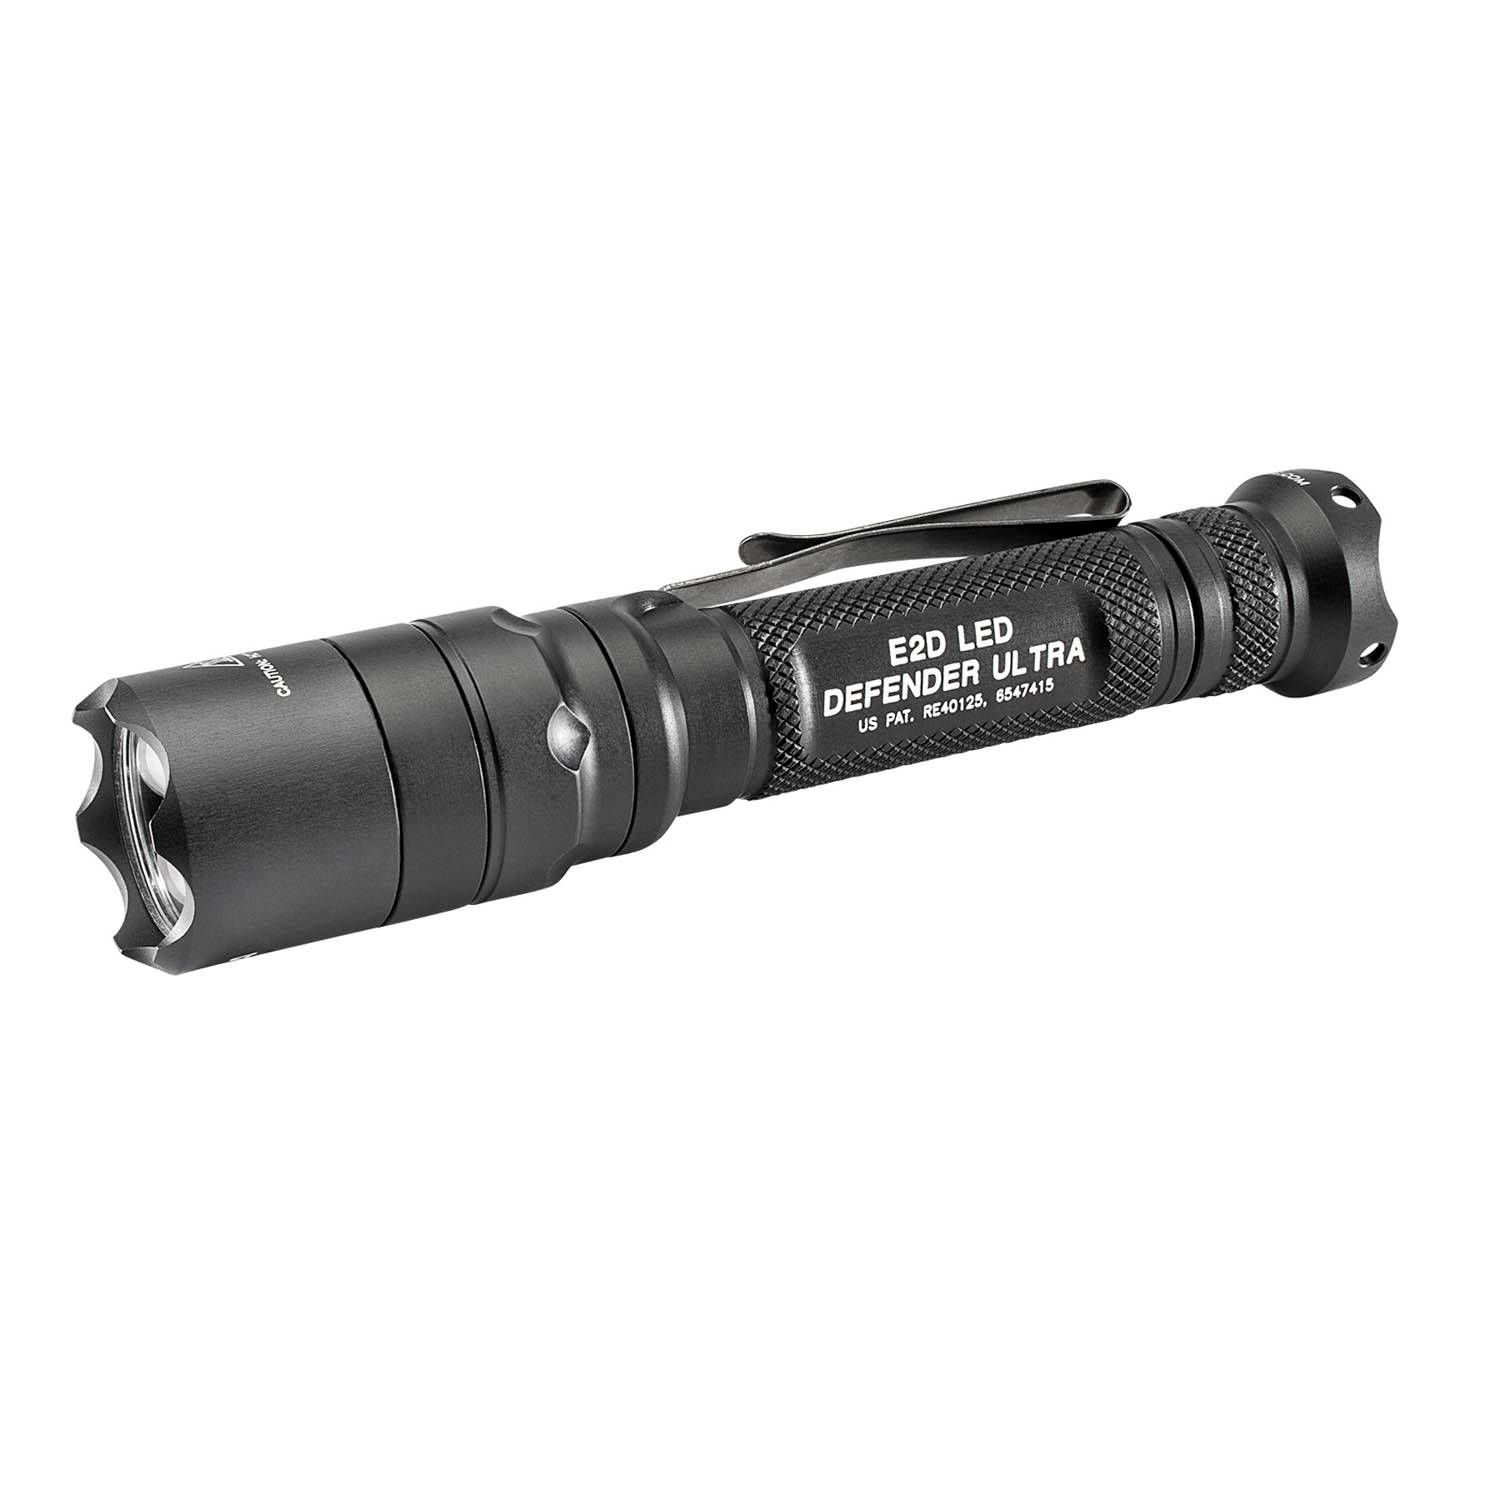 SureFire E2D LED Defender® Ultra Flashlight